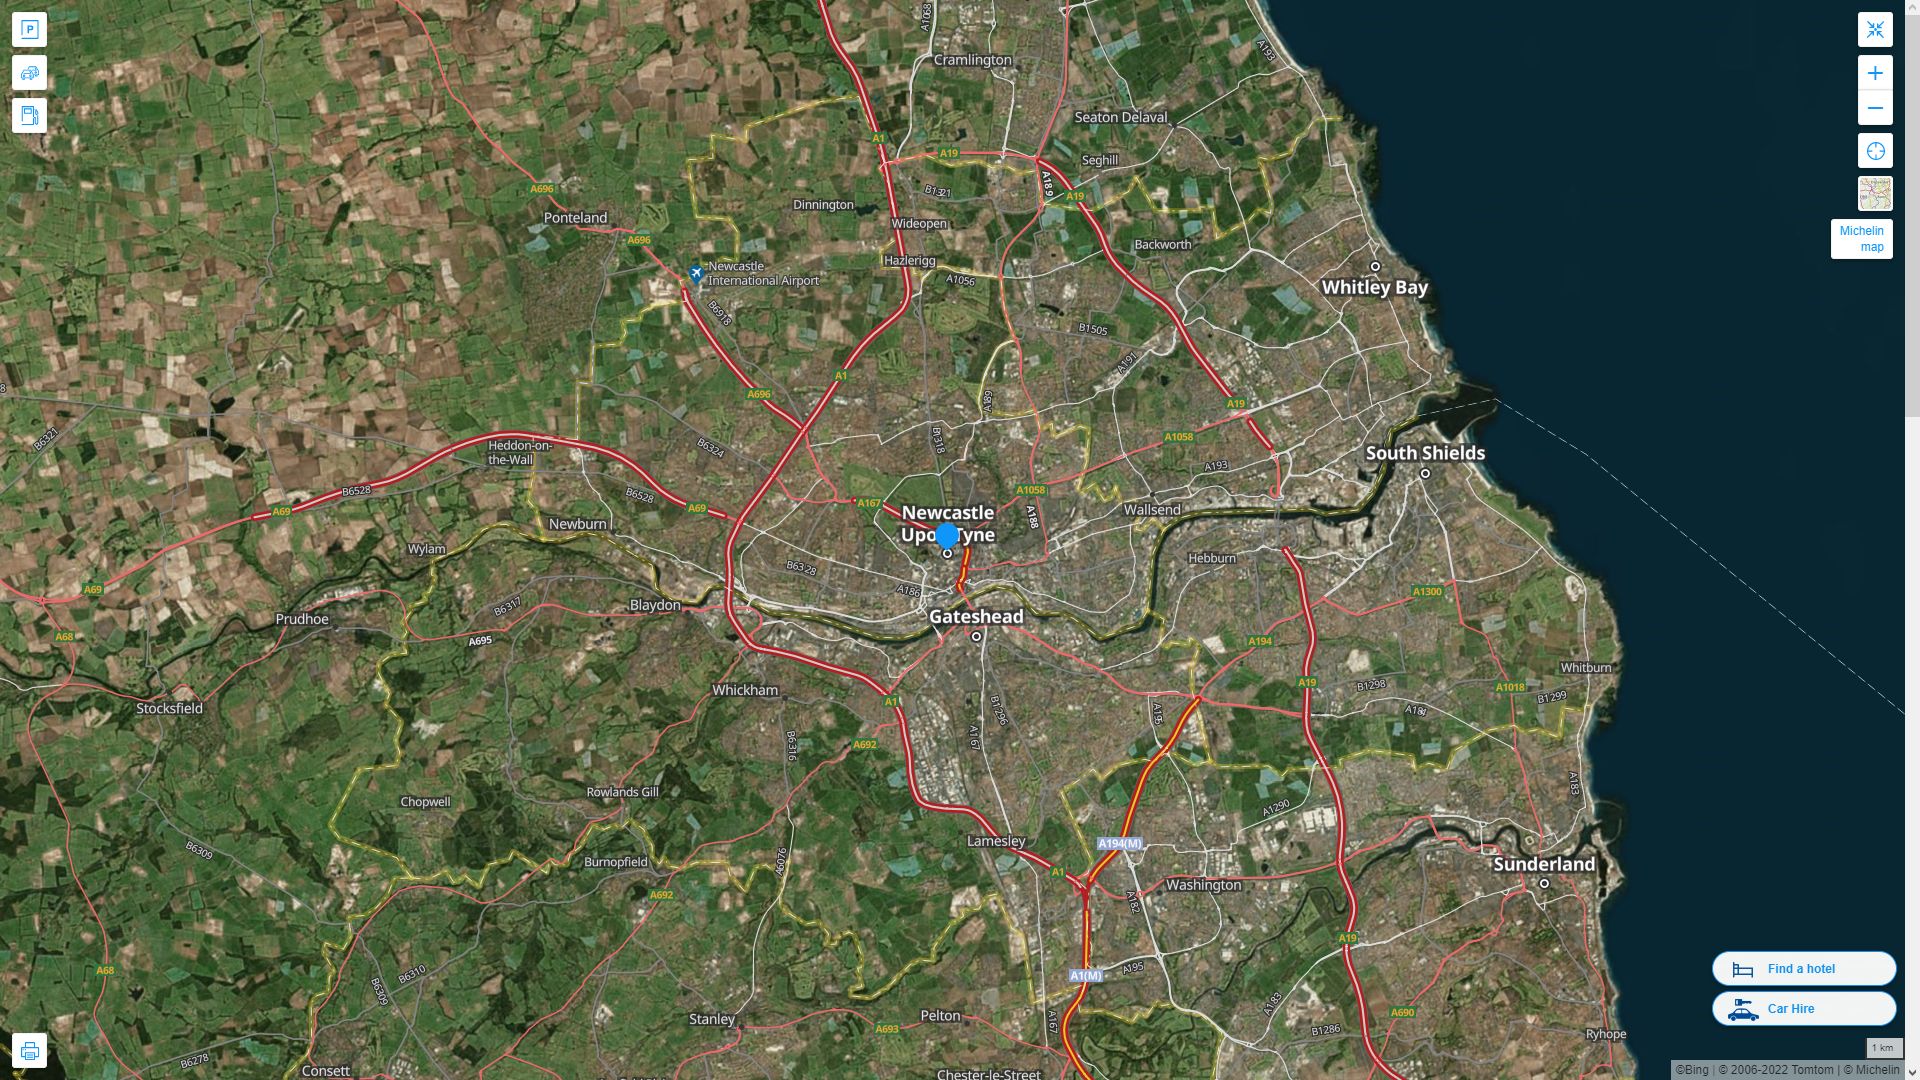 Newcastle Royaume Uni Autoroute et carte routiere avec vue satellite